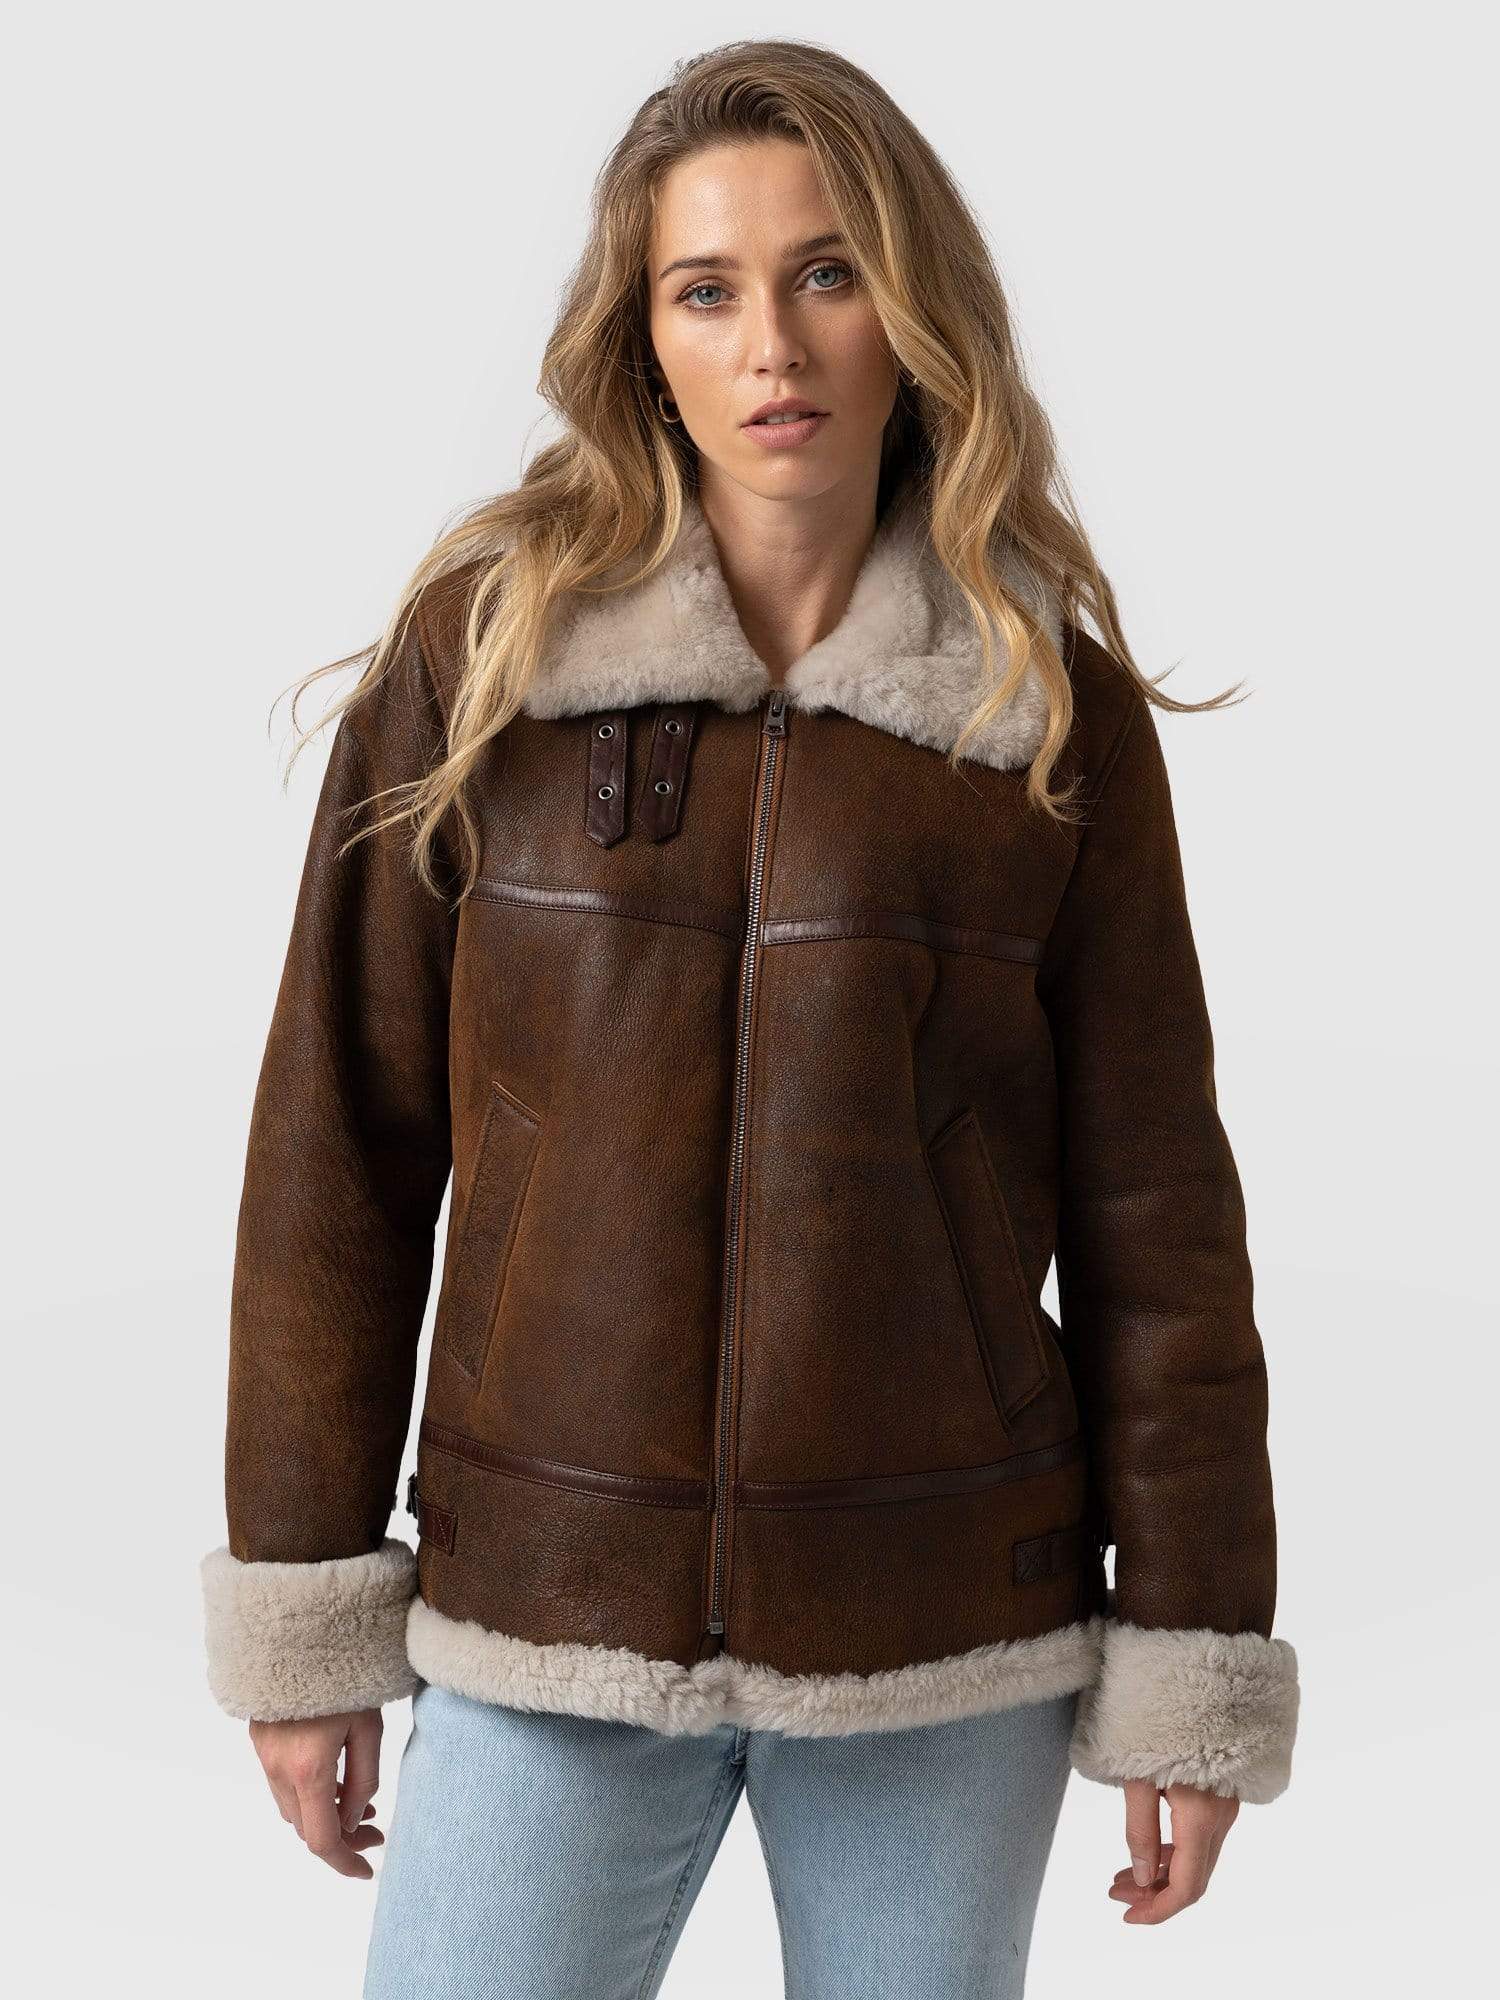 Amelia Aviator Jacket Brown - Women's Leather Jackets | Saint + Sofia ...